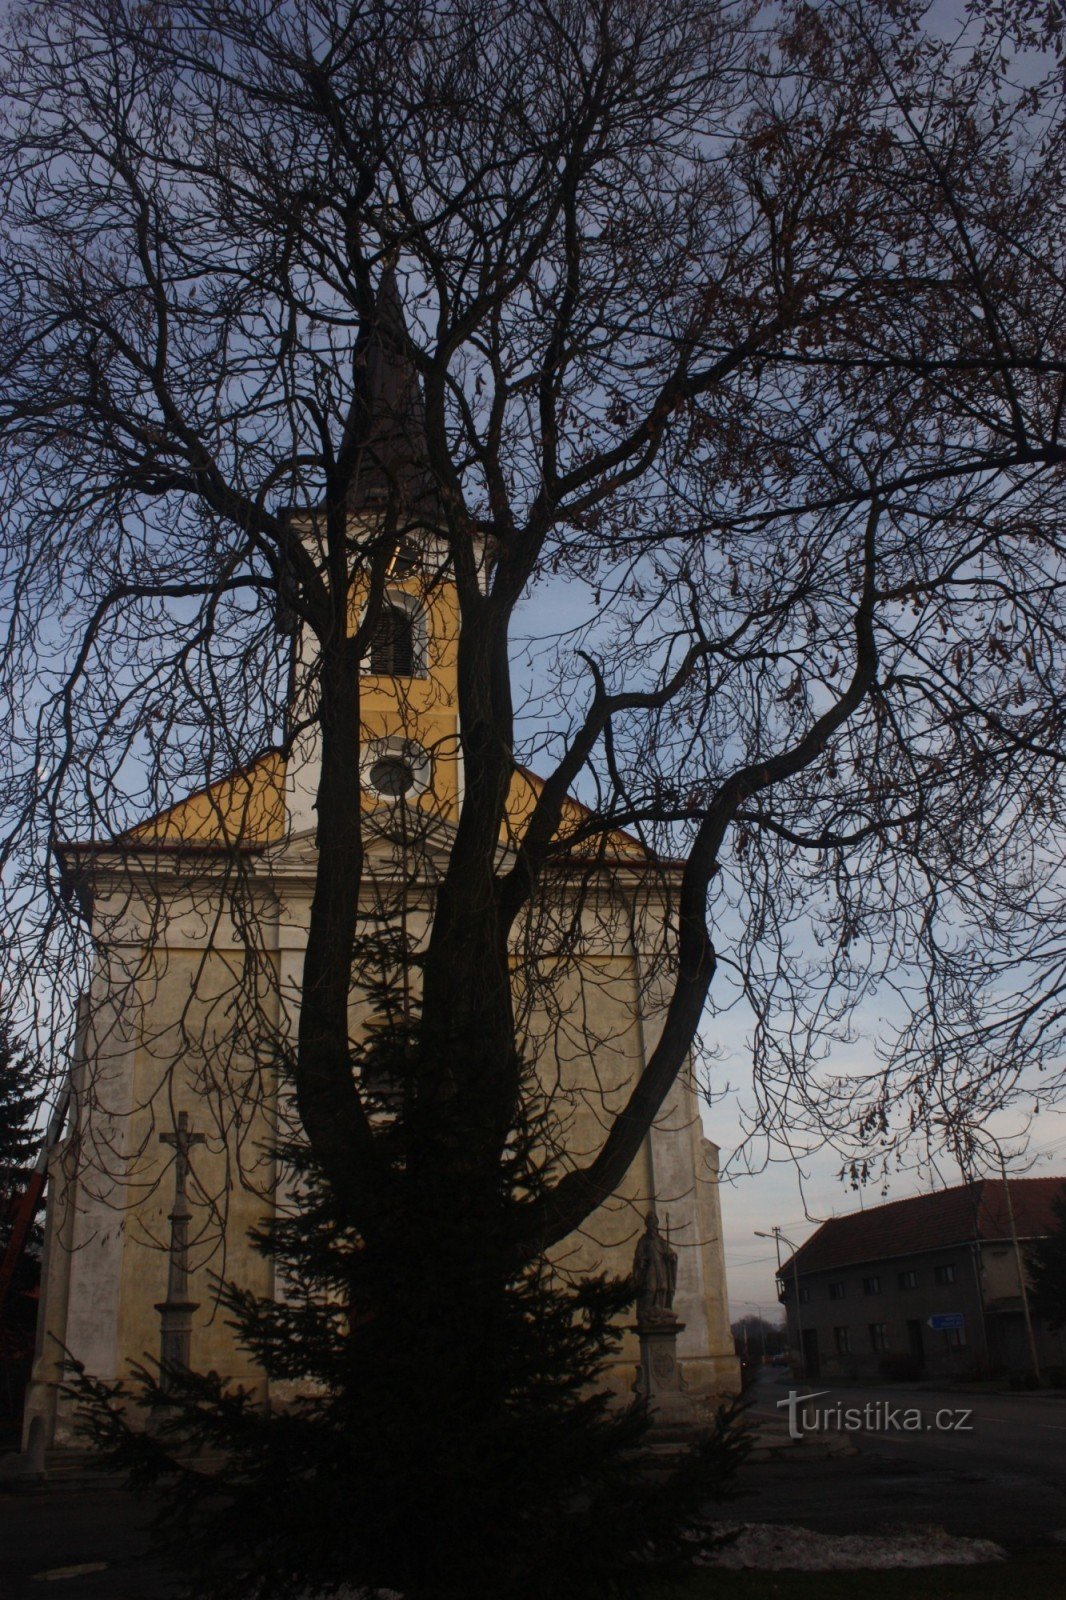 Podštatský reneszánsz sírkövei Prusínovice-ból a Szent István-templomban. Michal Vrchoslavicében